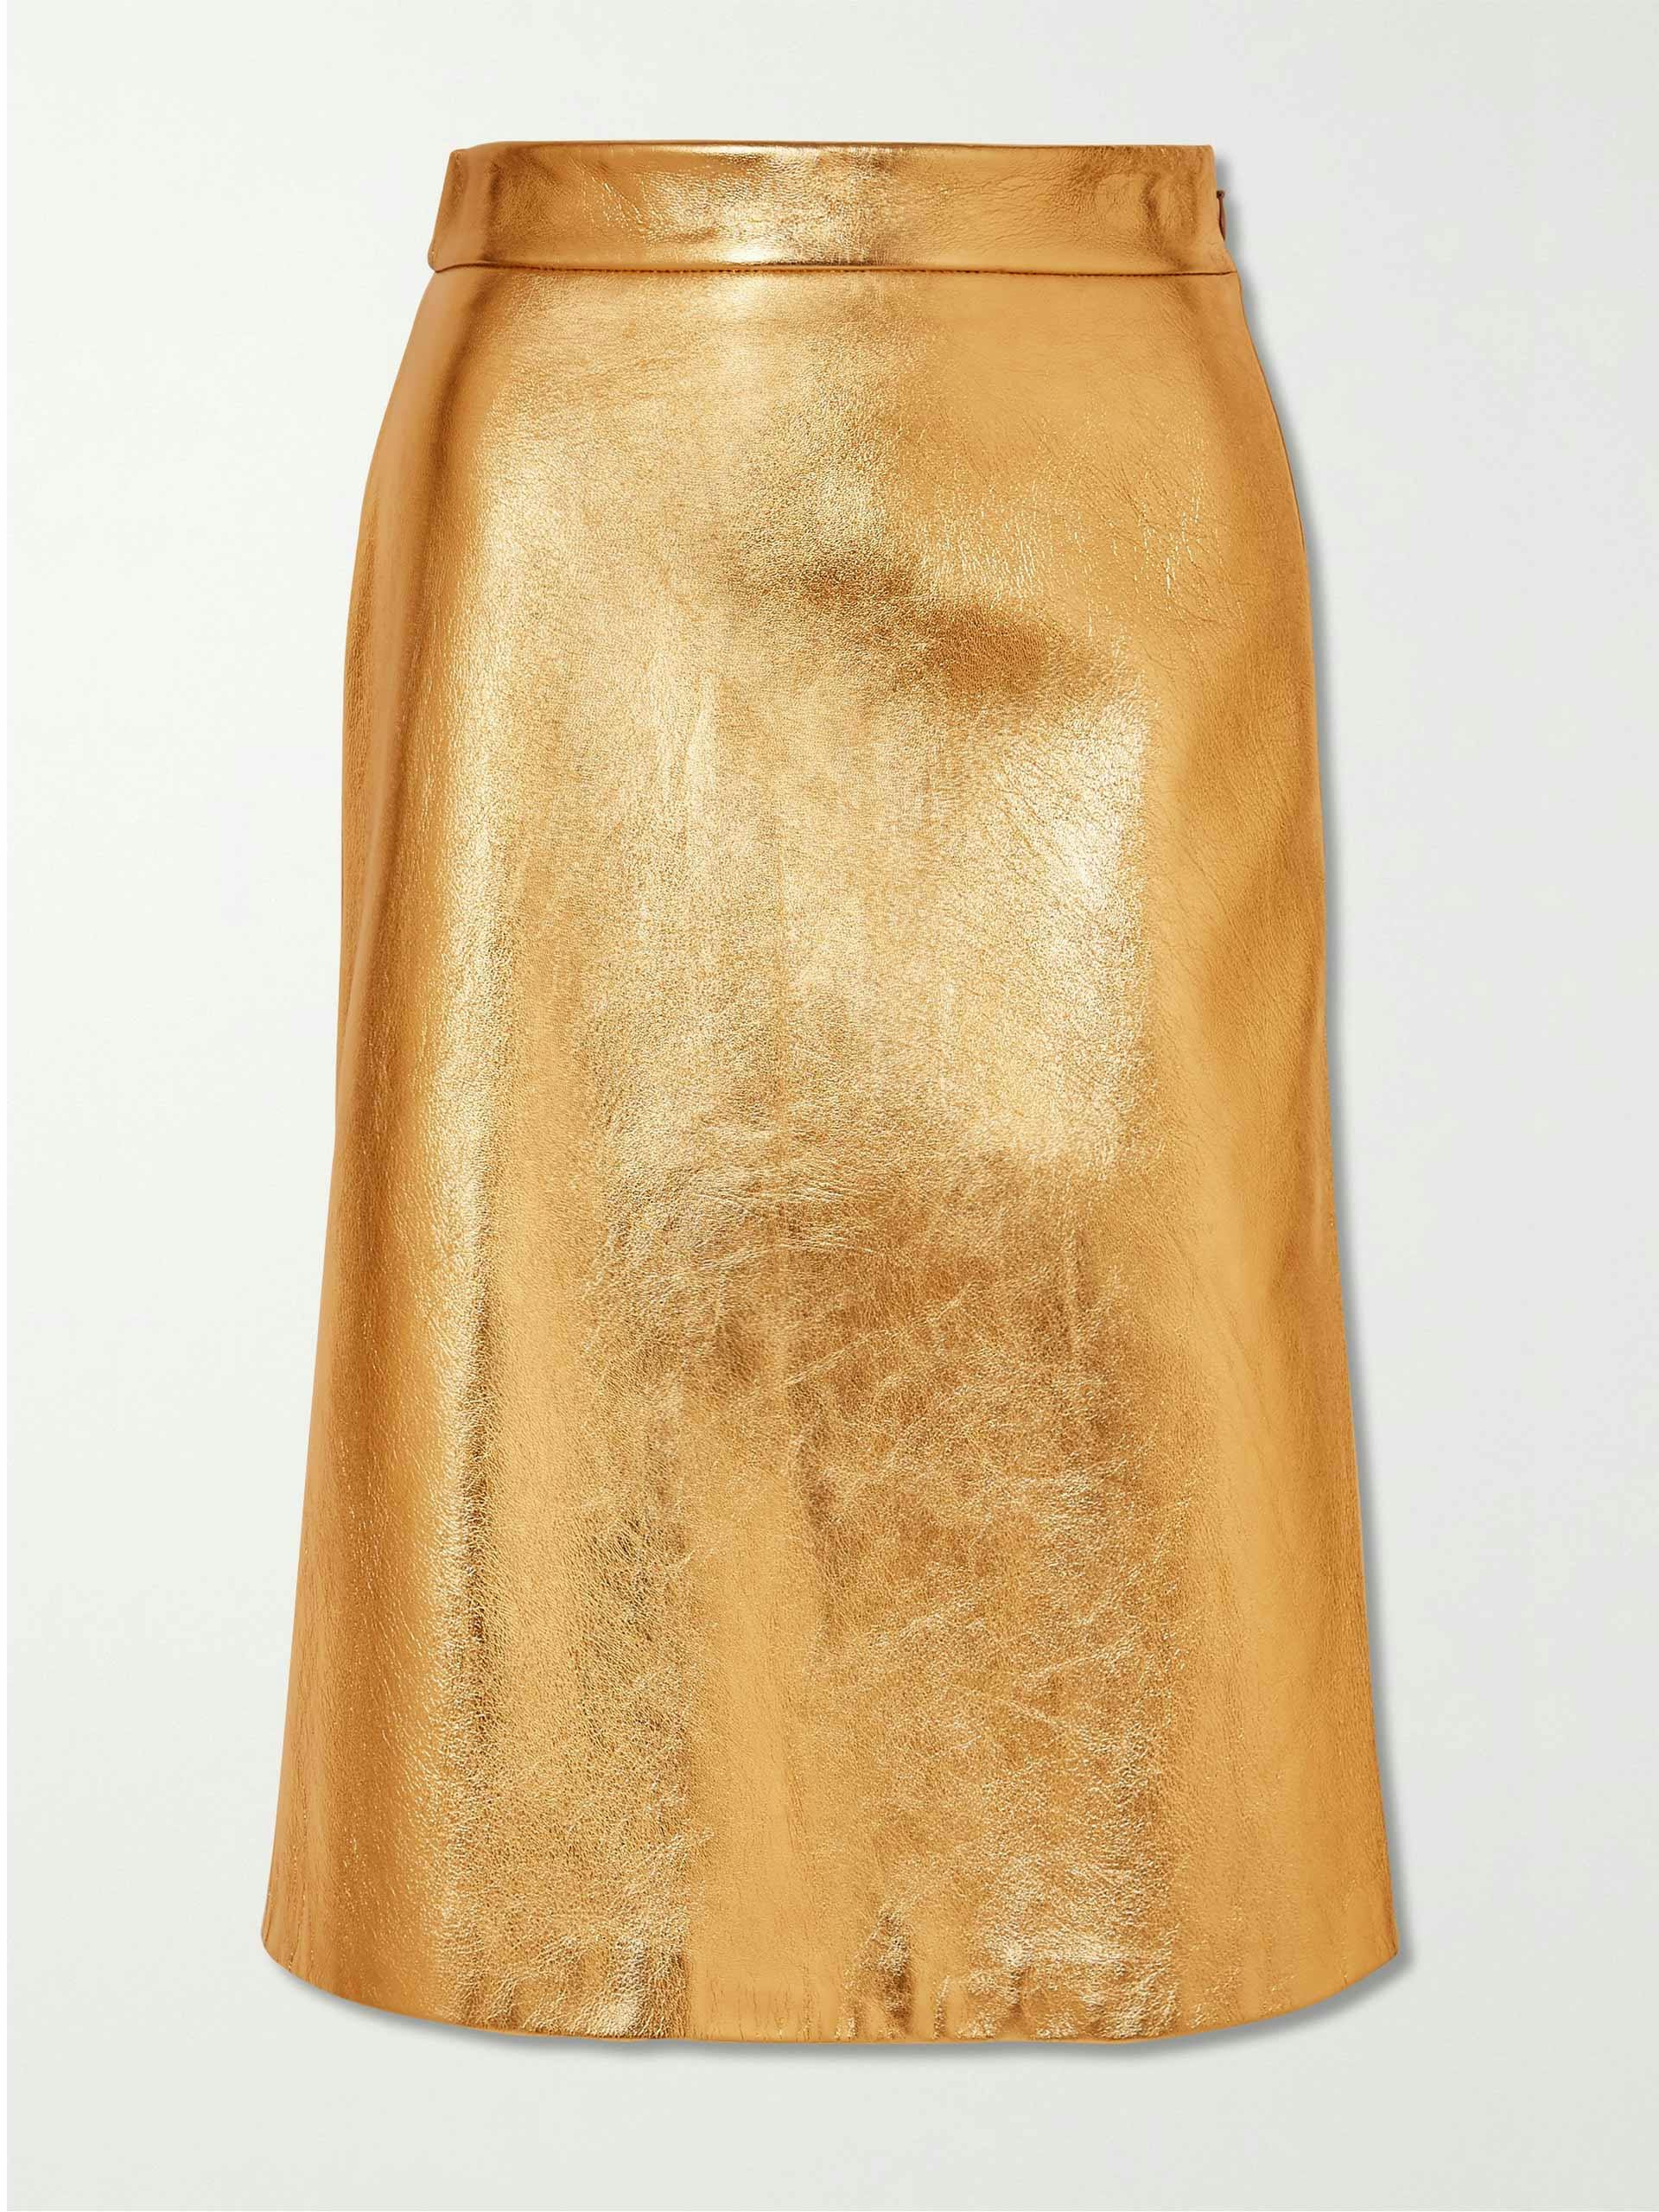 Gold metallic textured-leather skirt